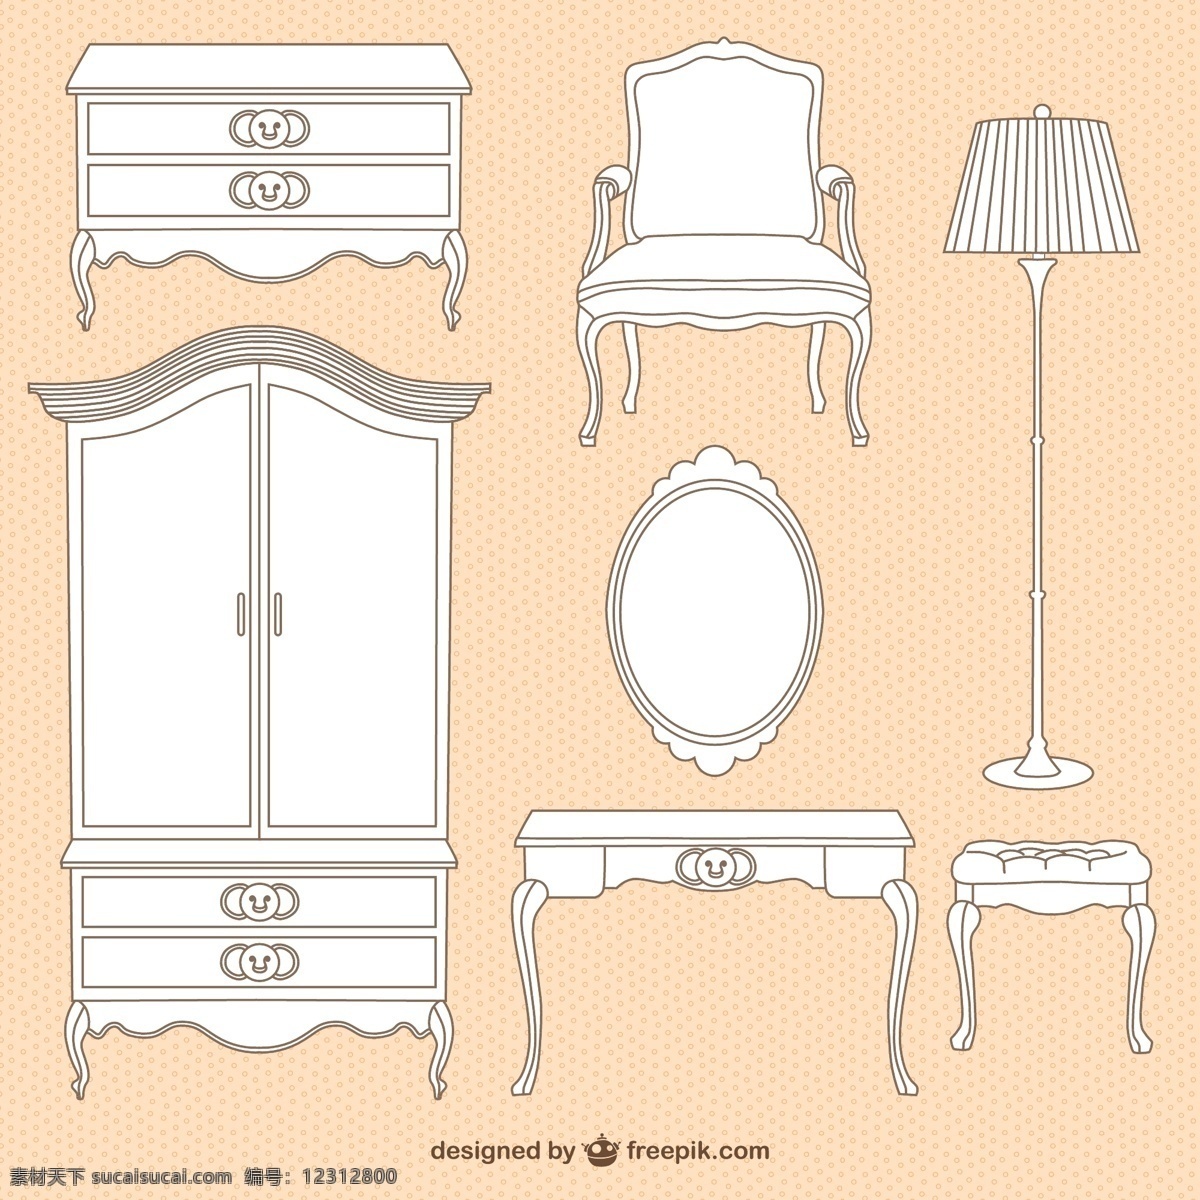 白色 家具设计 矢量 家具 椅子 落地灯 梳妆台 衣柜 柜子 矢量图